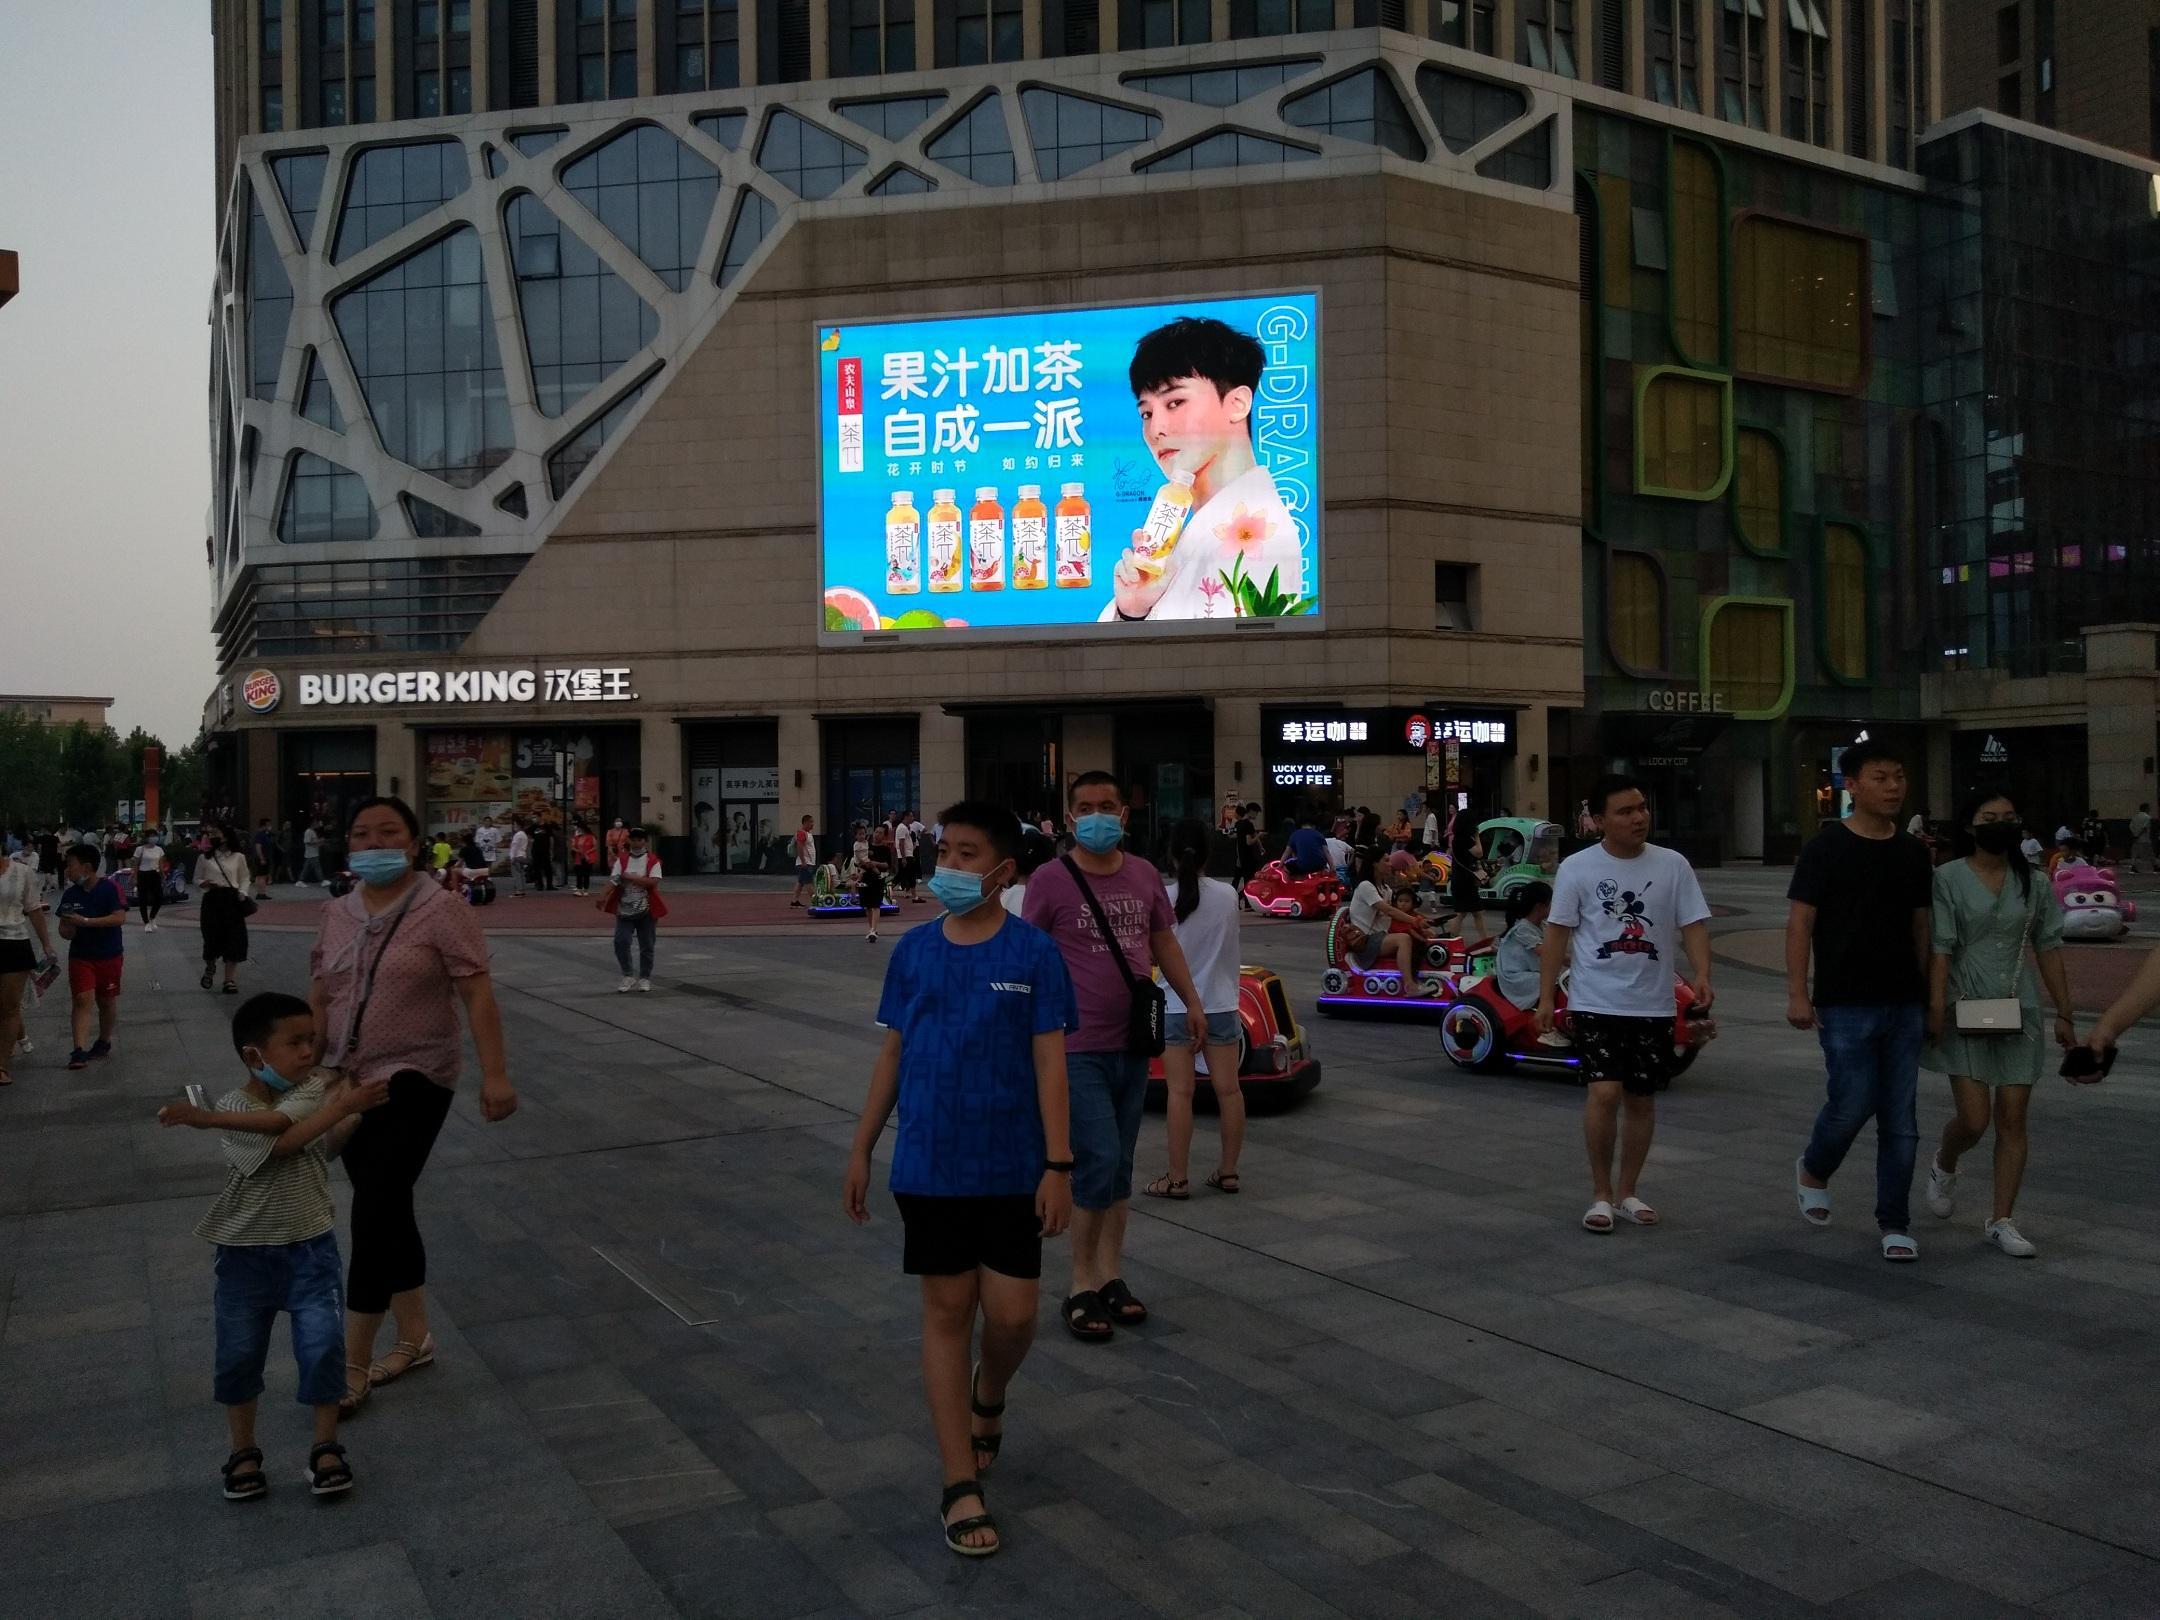 河南郑州中原区雪松路朗悦公园茂商超卖场LED屏